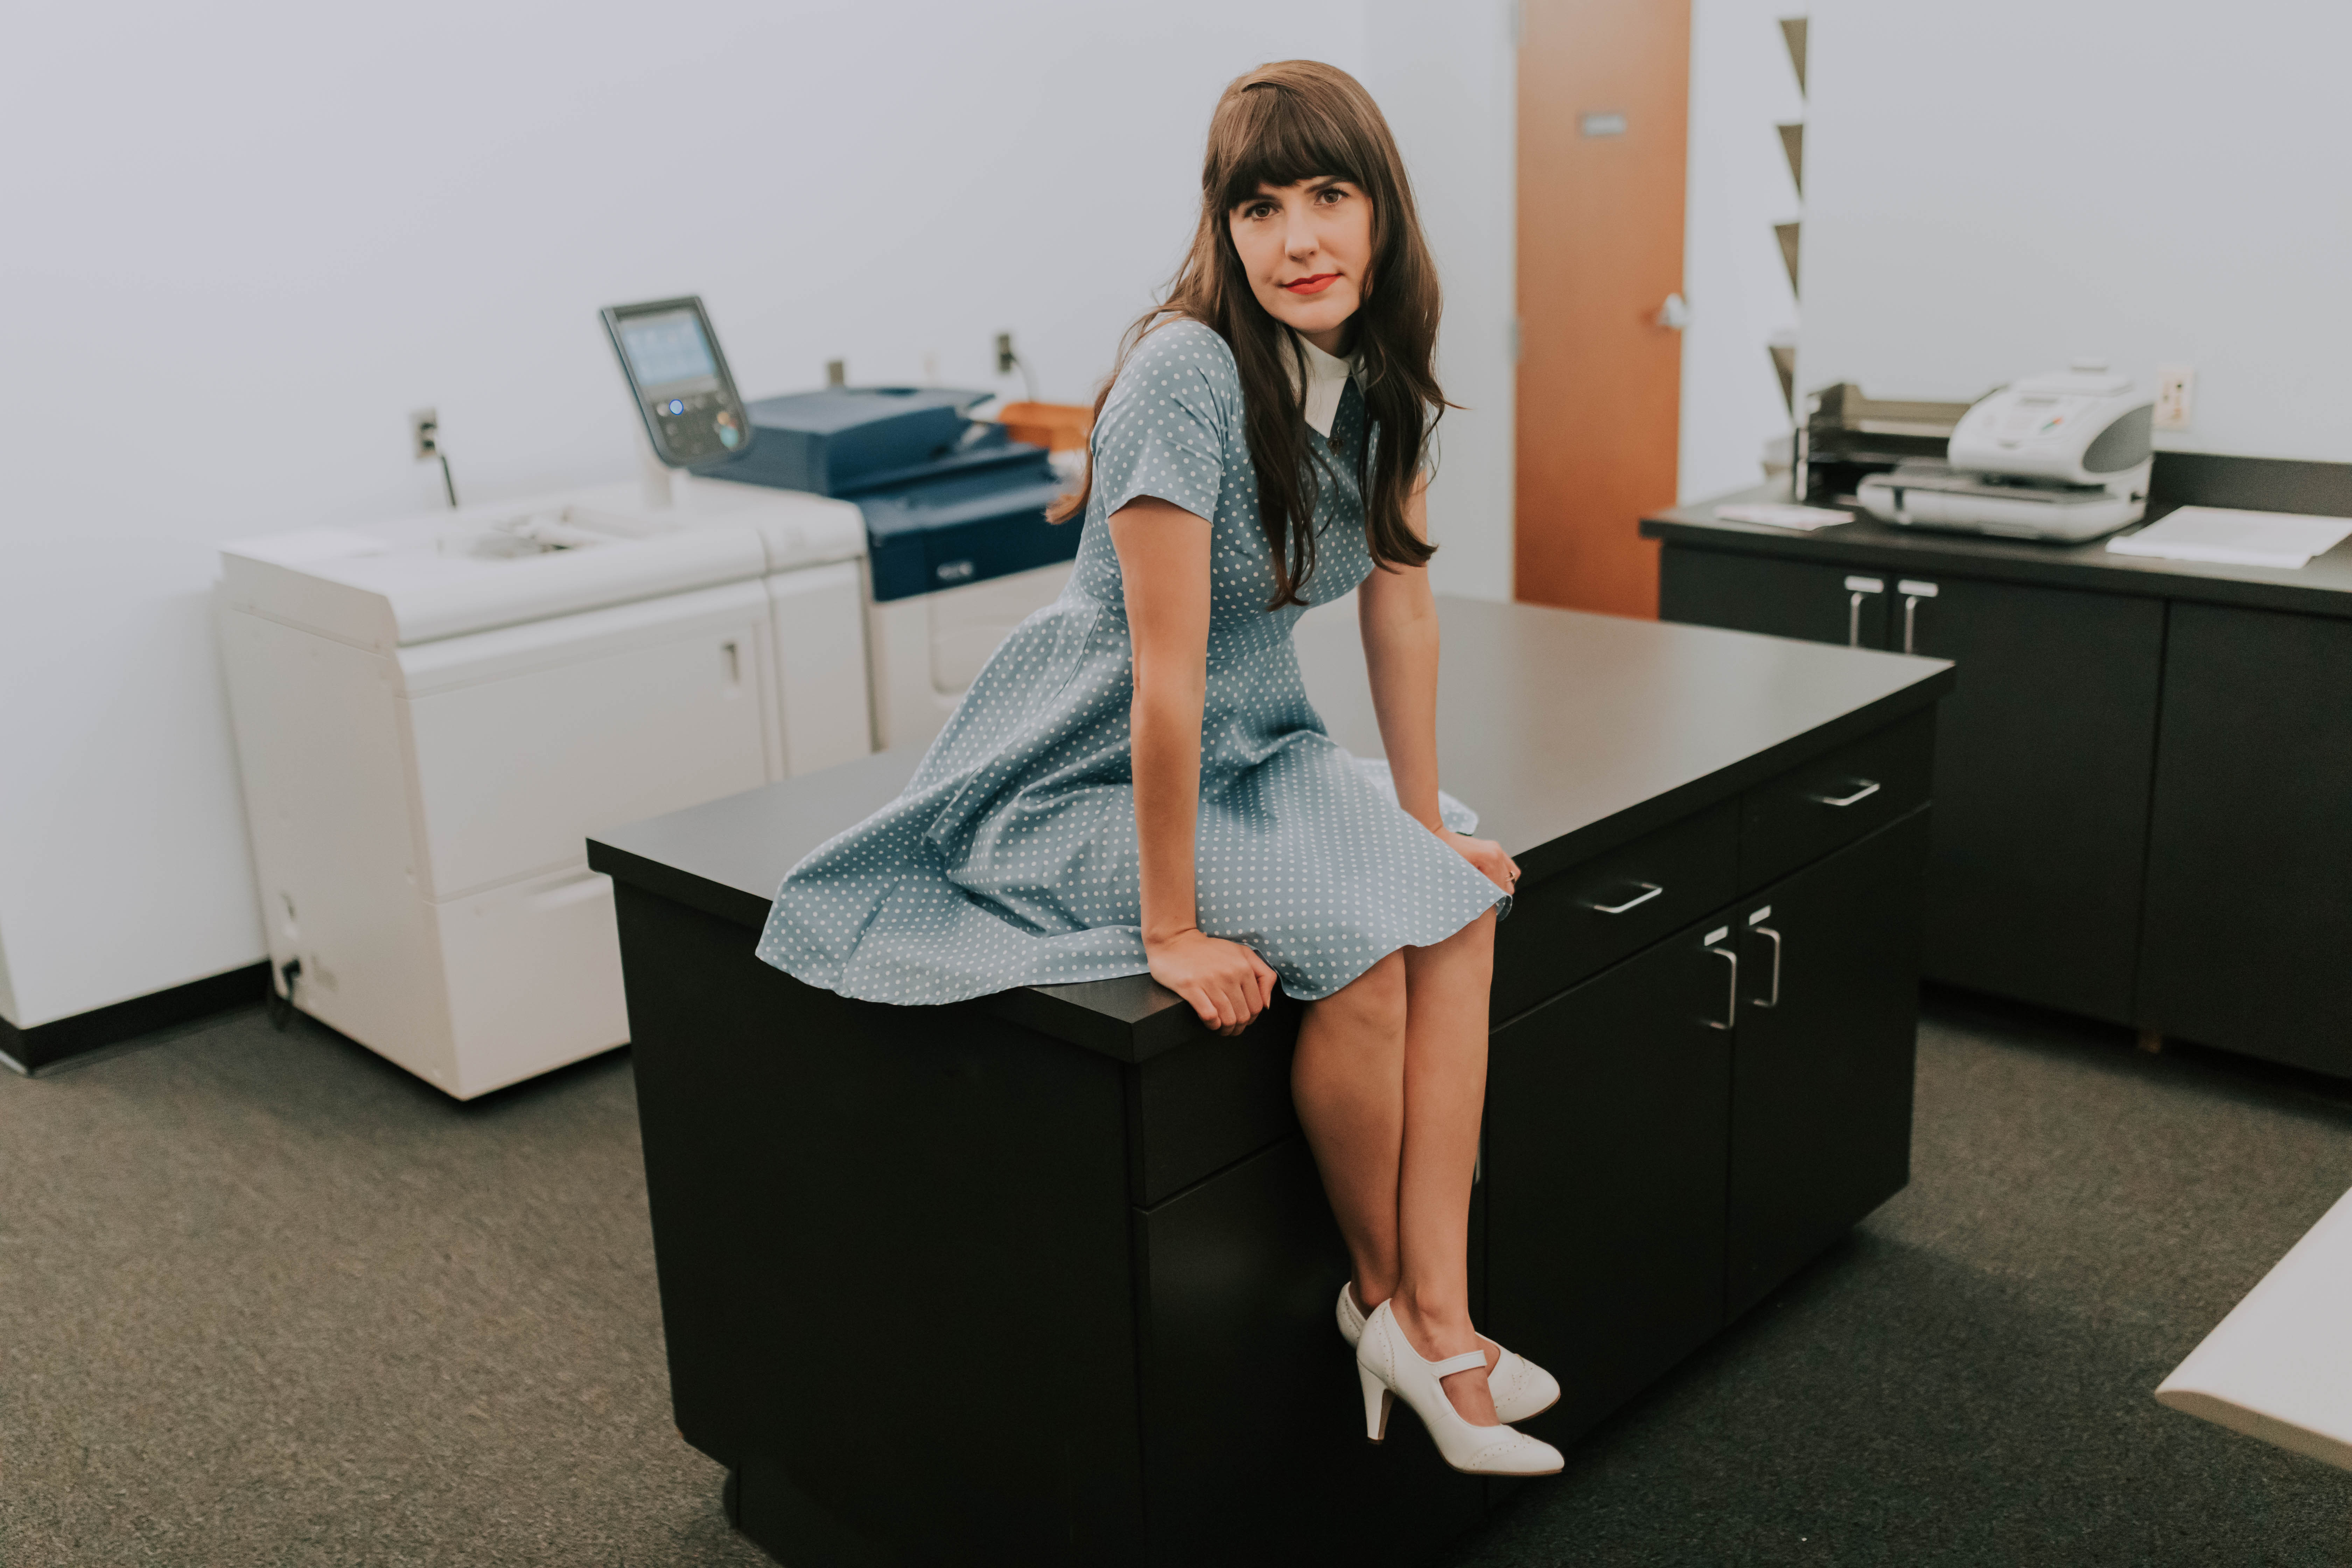 KellyMarie, wearing a dress, sits inside a office